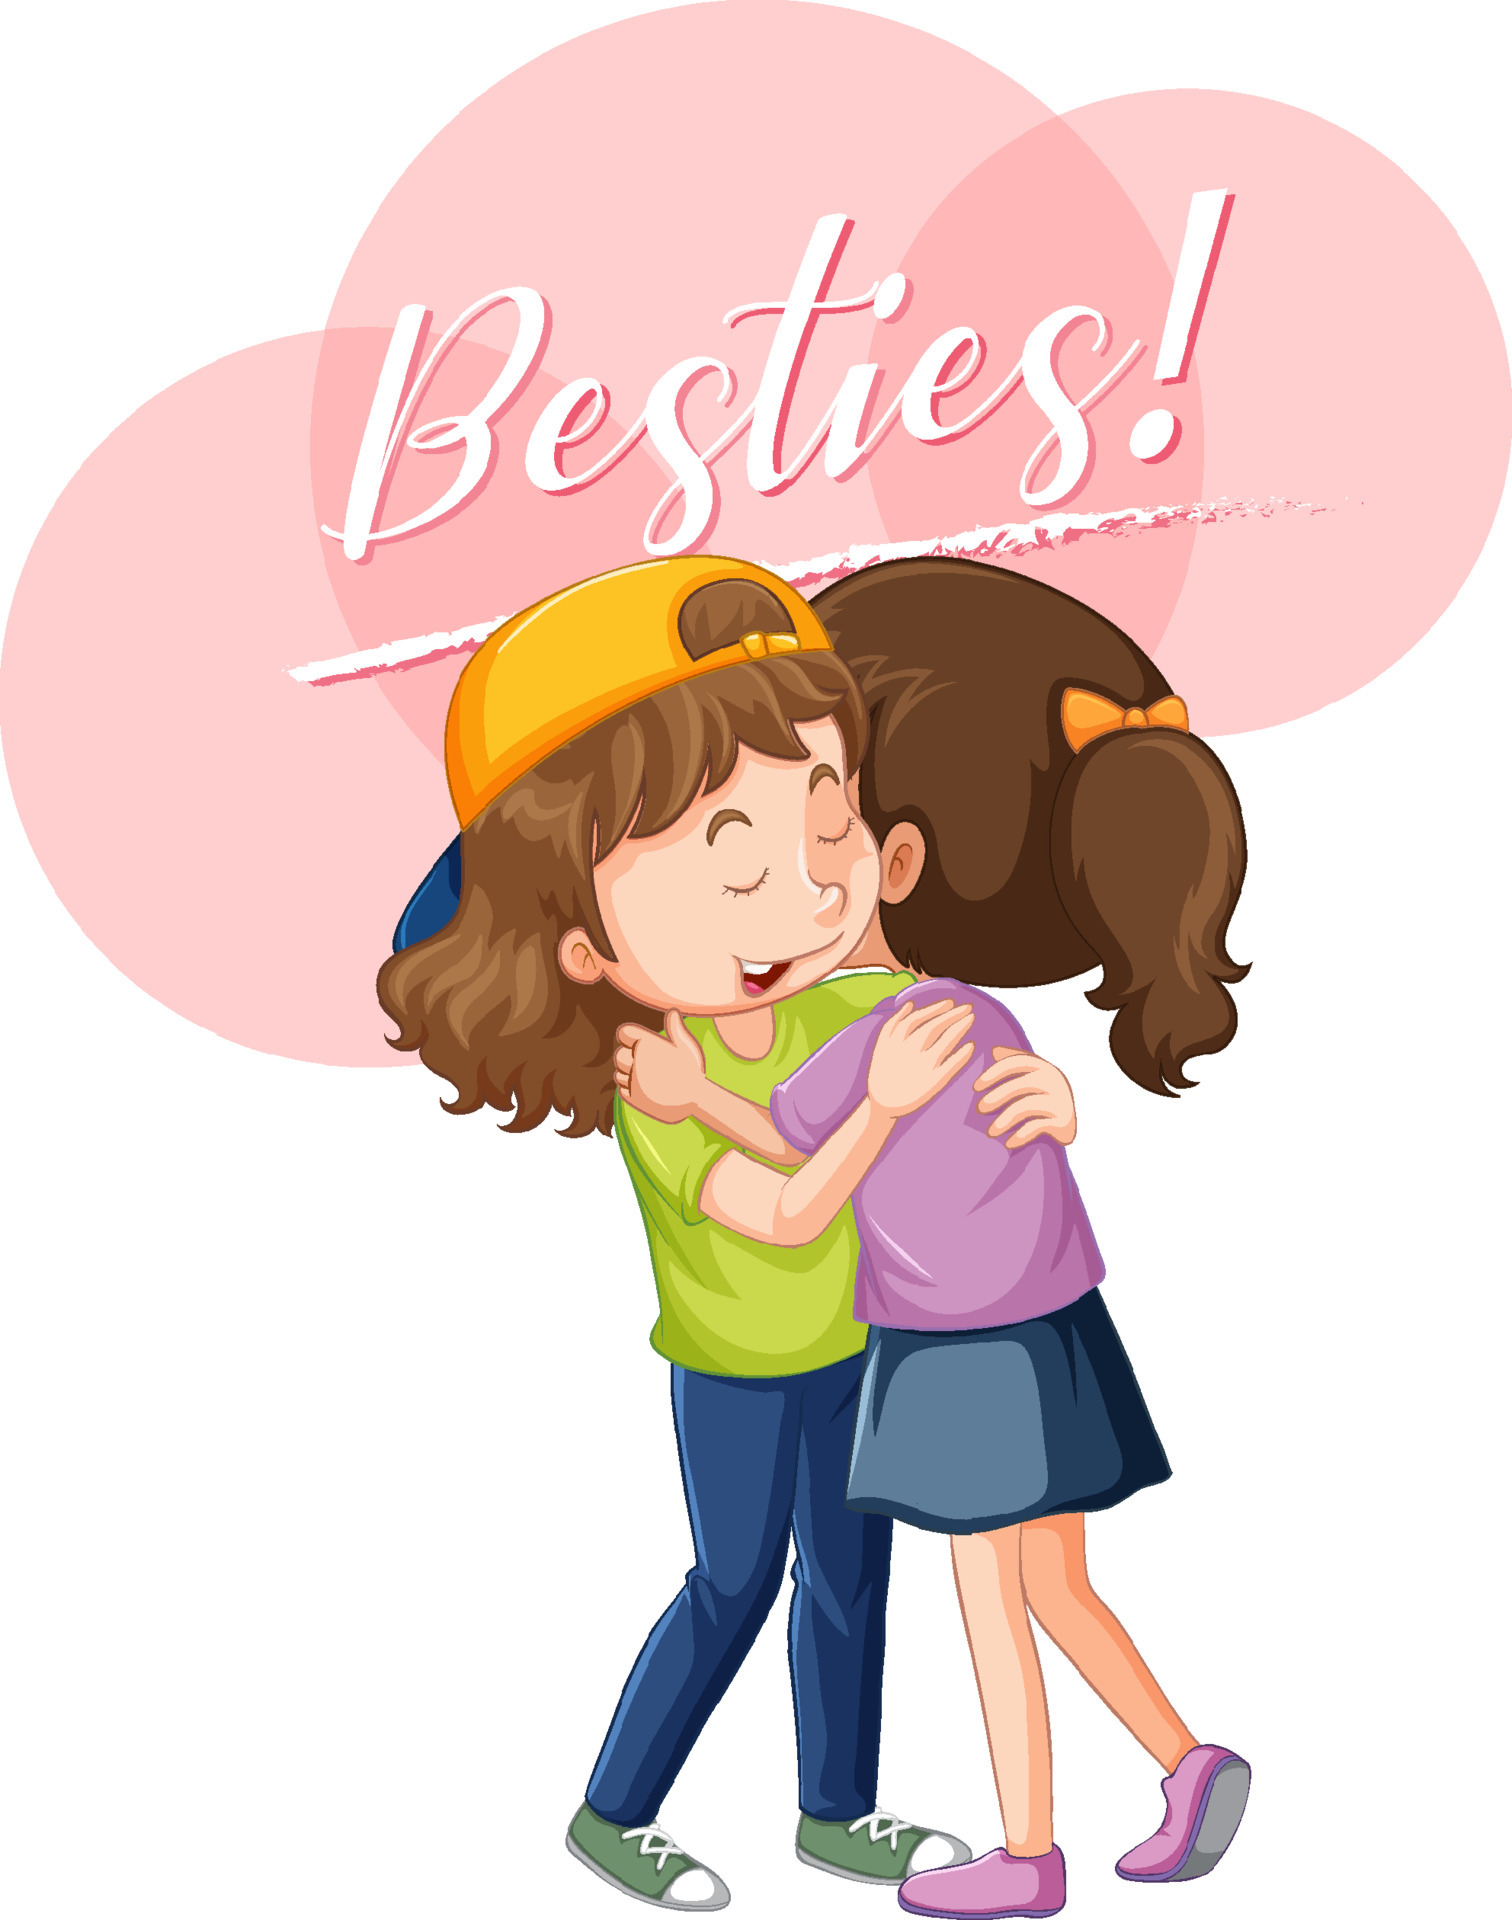 Best friend girls cartoon character with besties lettering 5181259 Vector  Art at Vecteezy